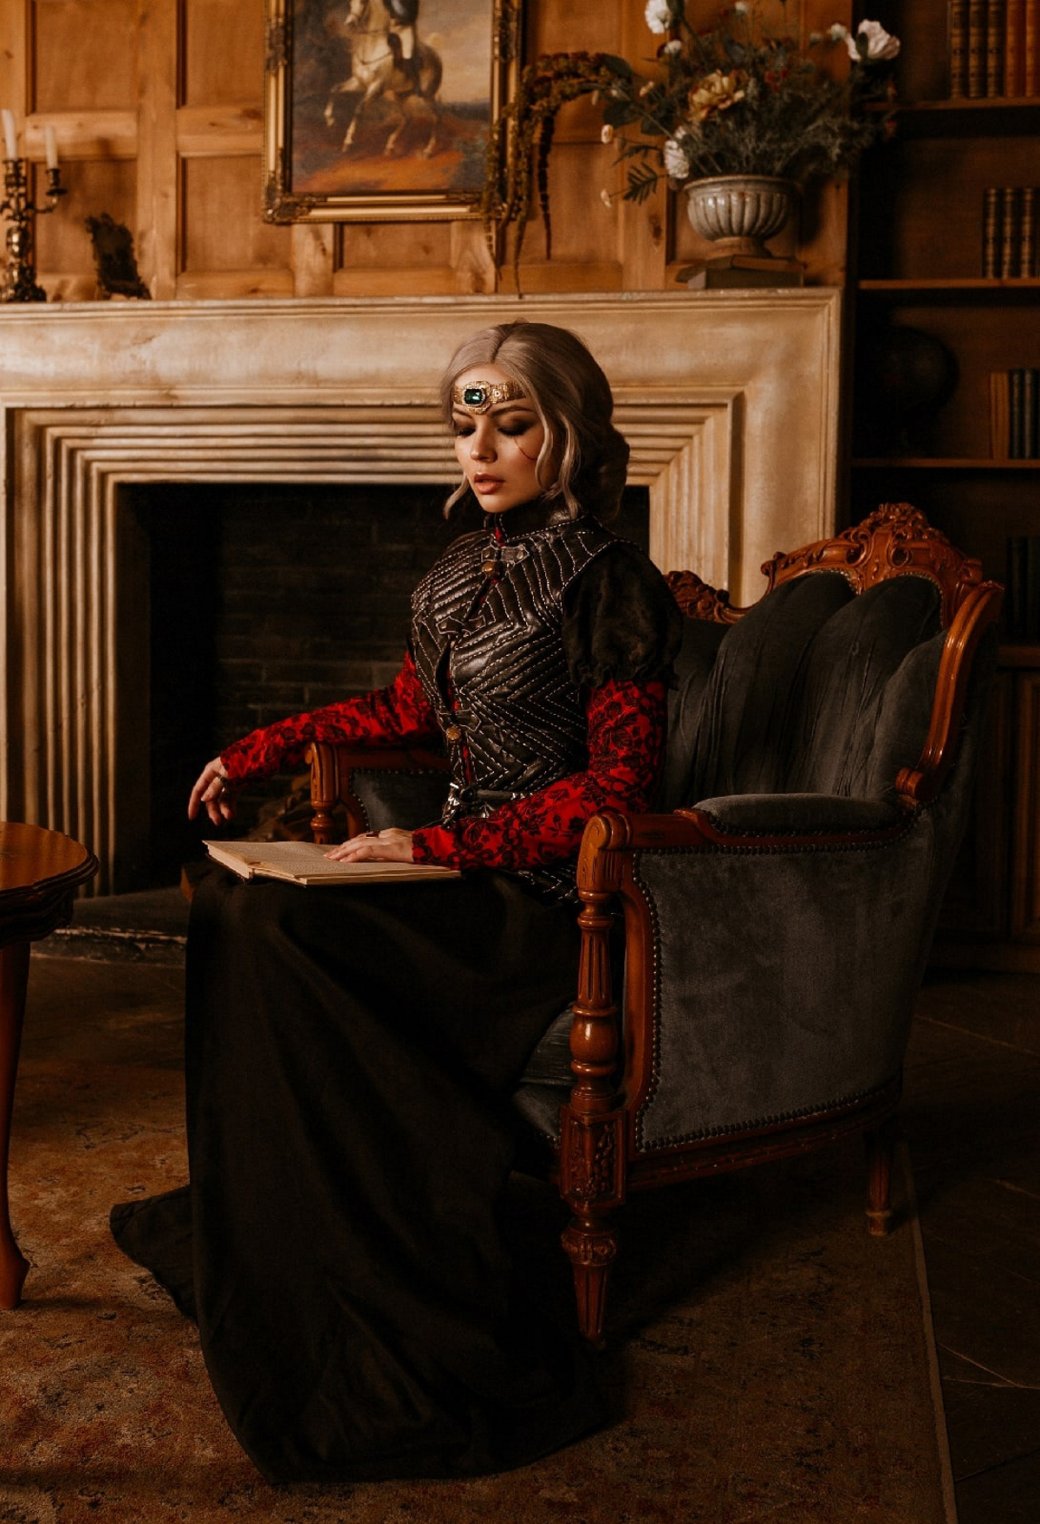 Галерея Косплеерша представила величественный образ императрицы Цири из «Ведьмака 3» - 6 фото